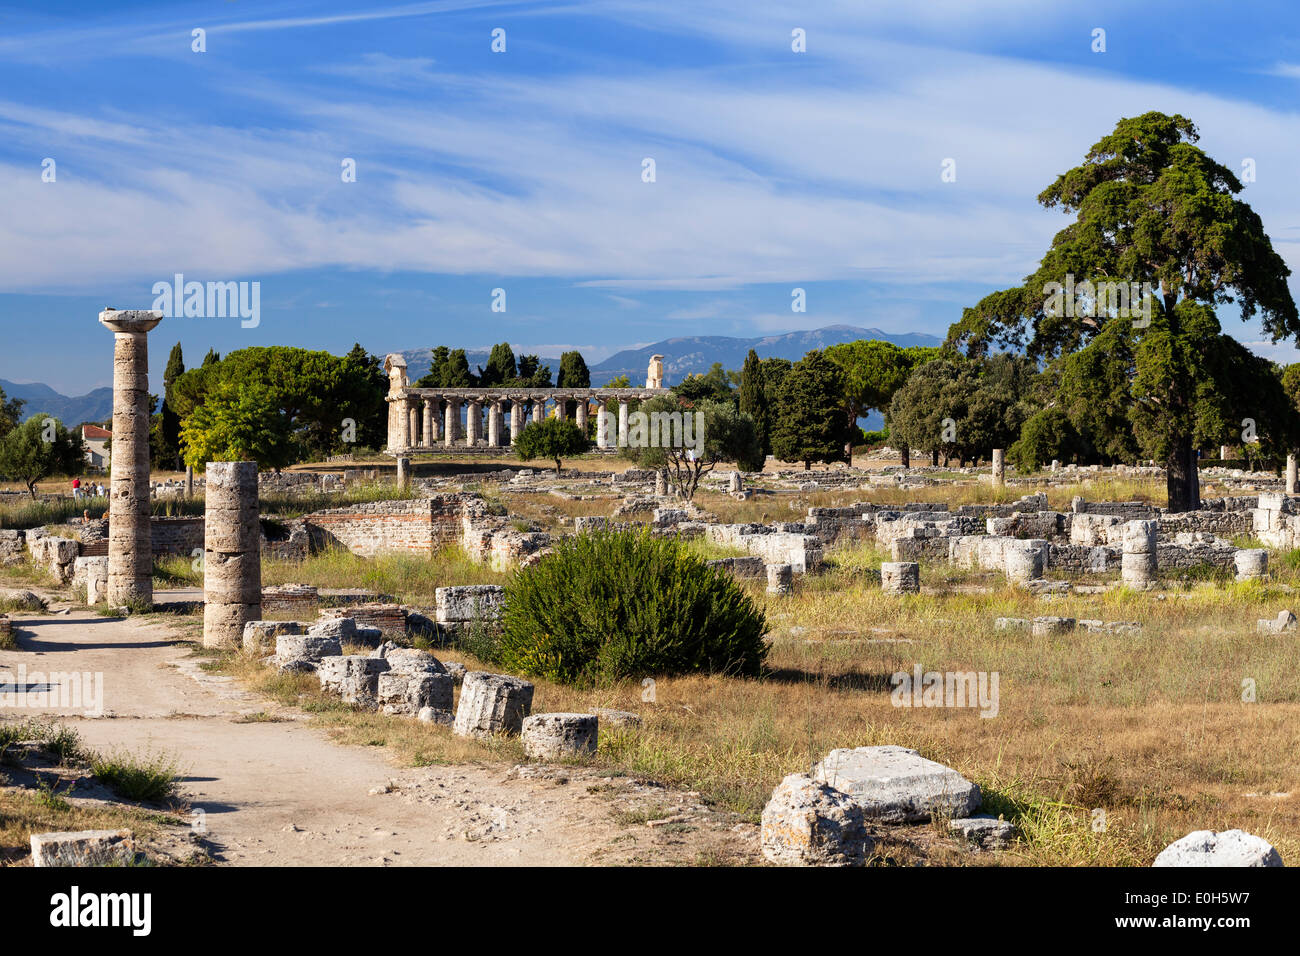 El Templo de Atenea, la histórica ciudad de Paestum, en el Golfo de Salerno, Capaccio, Campania, Italia, Europa Foto de stock